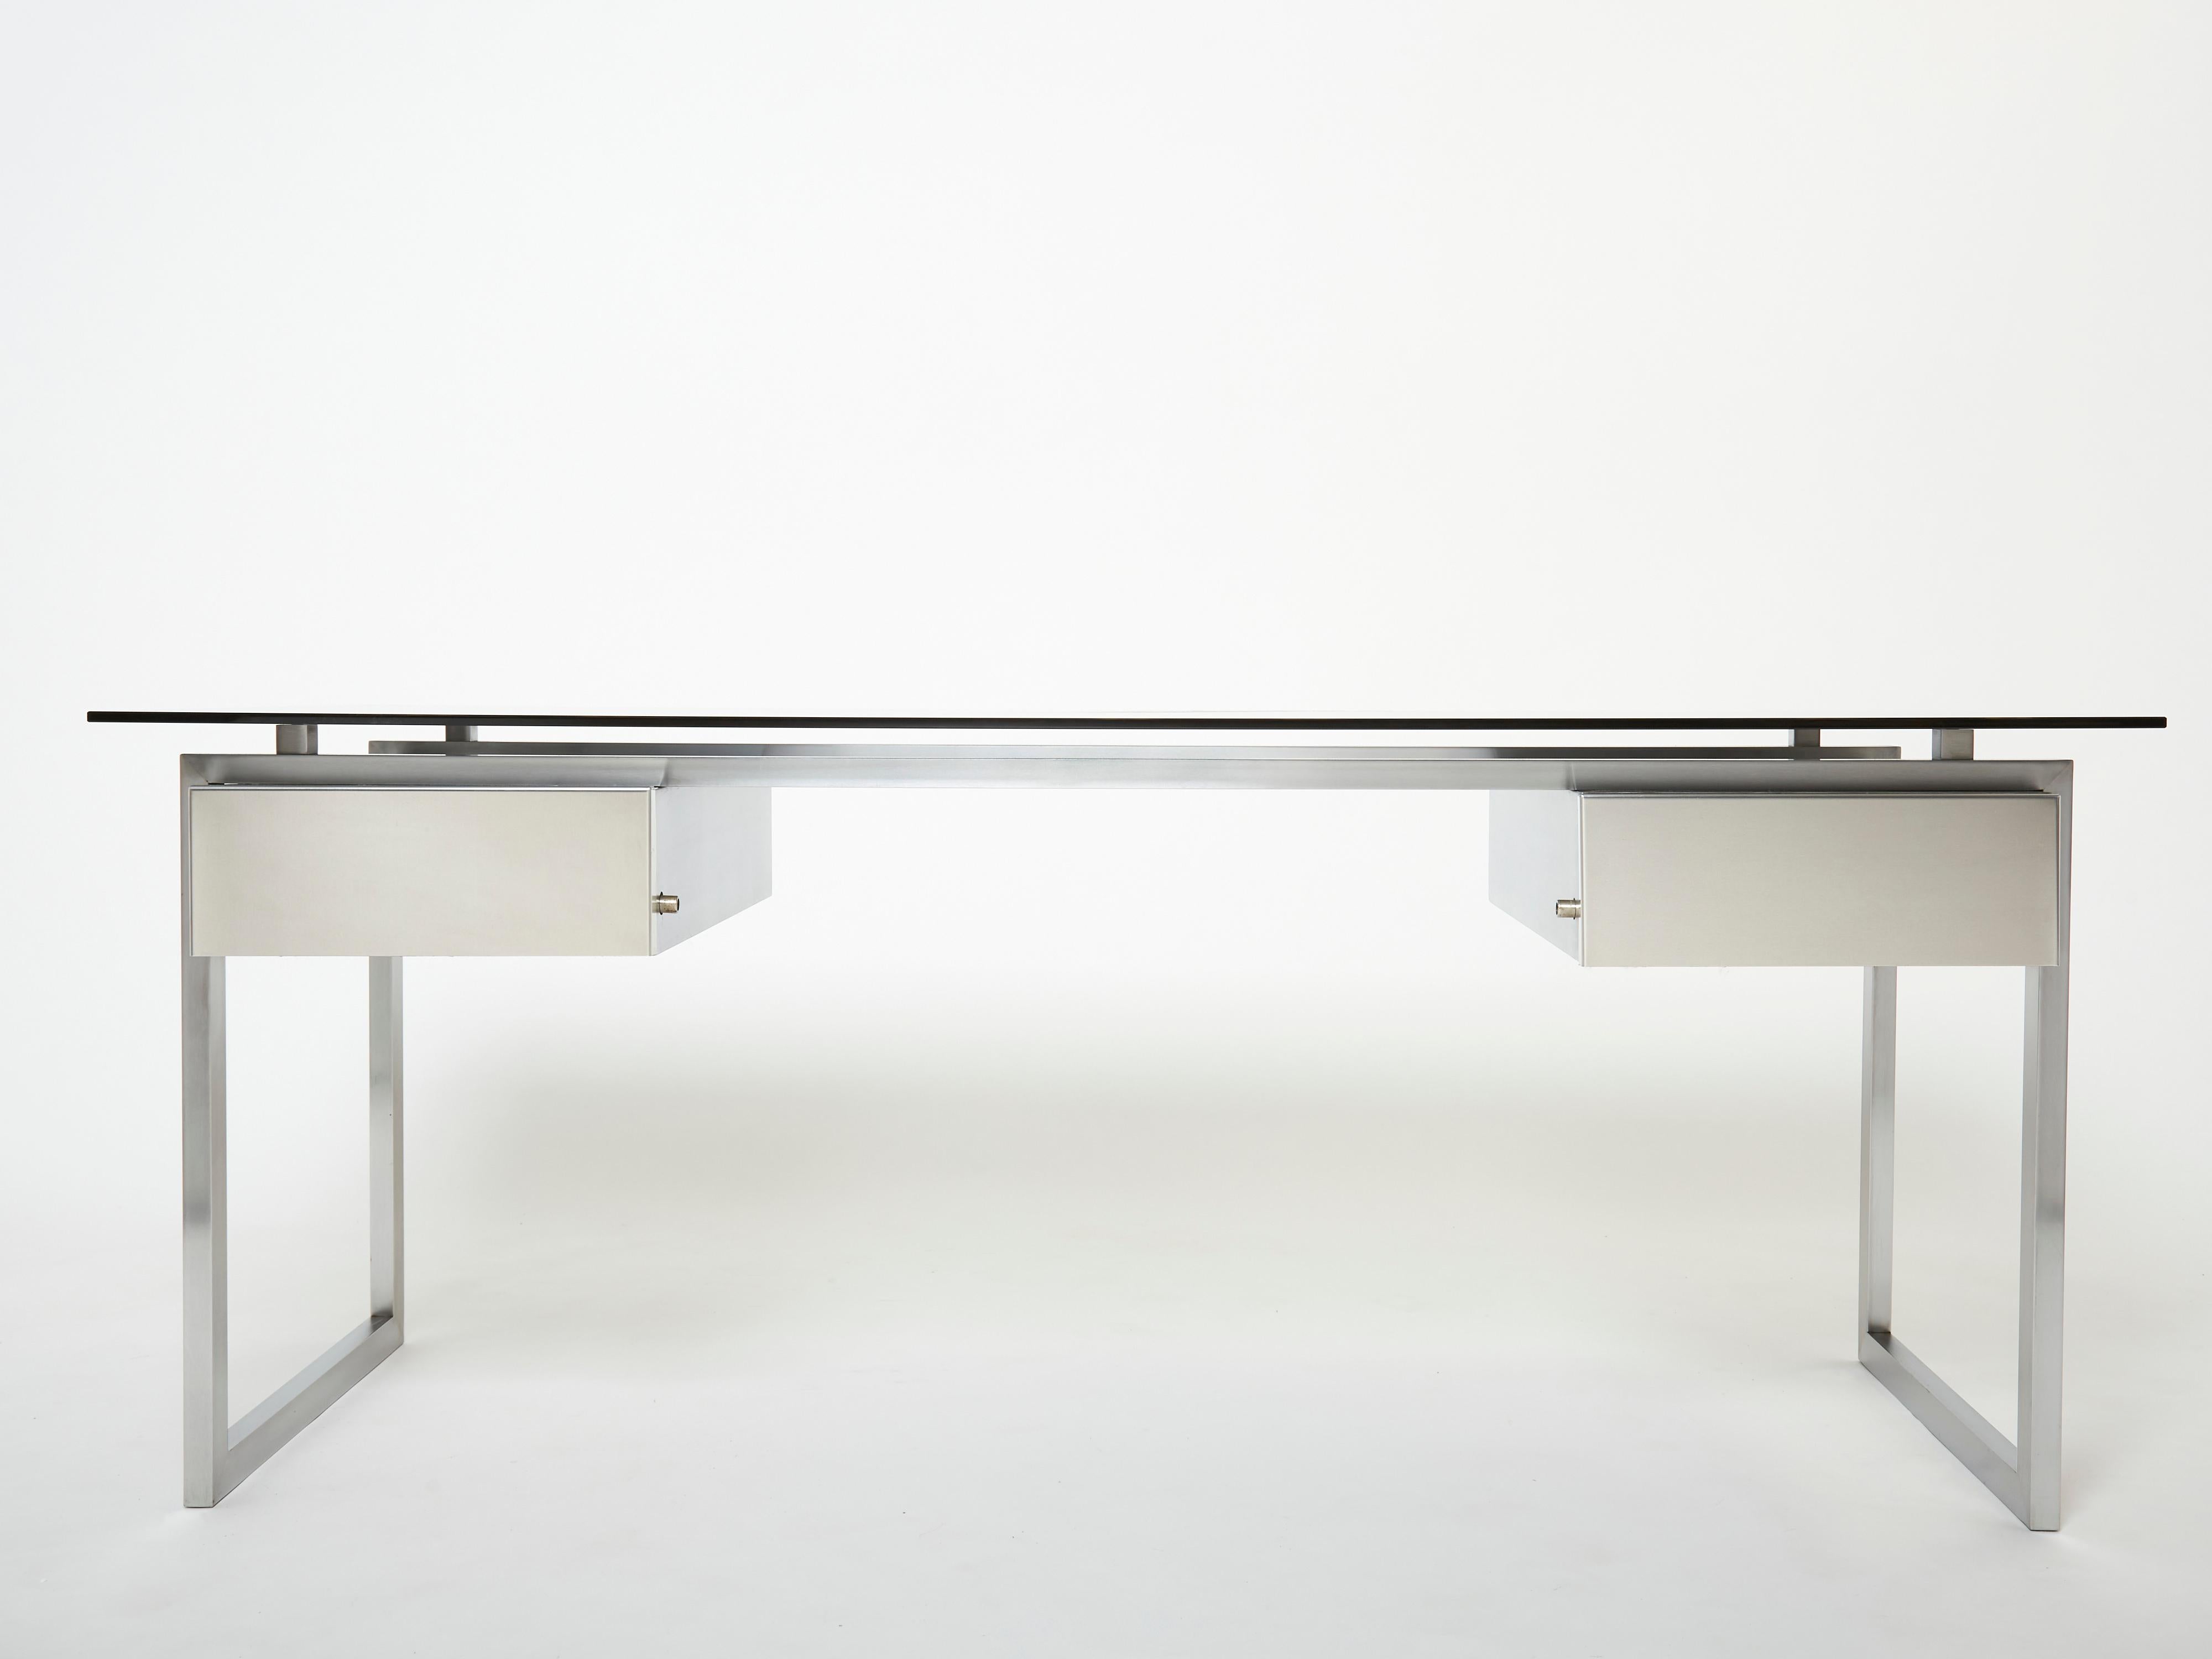 Ein seltener Schreibtisch aus gebürstetem Edelstahl, der in den 1970er Jahren vom französischen Designer Patrice Maffei für den Kappa-Verlag entworfen wurde. Er verfügt über zwei verschließbare Schubladen und eine graue Rauchglasplatte. In Anlehnung